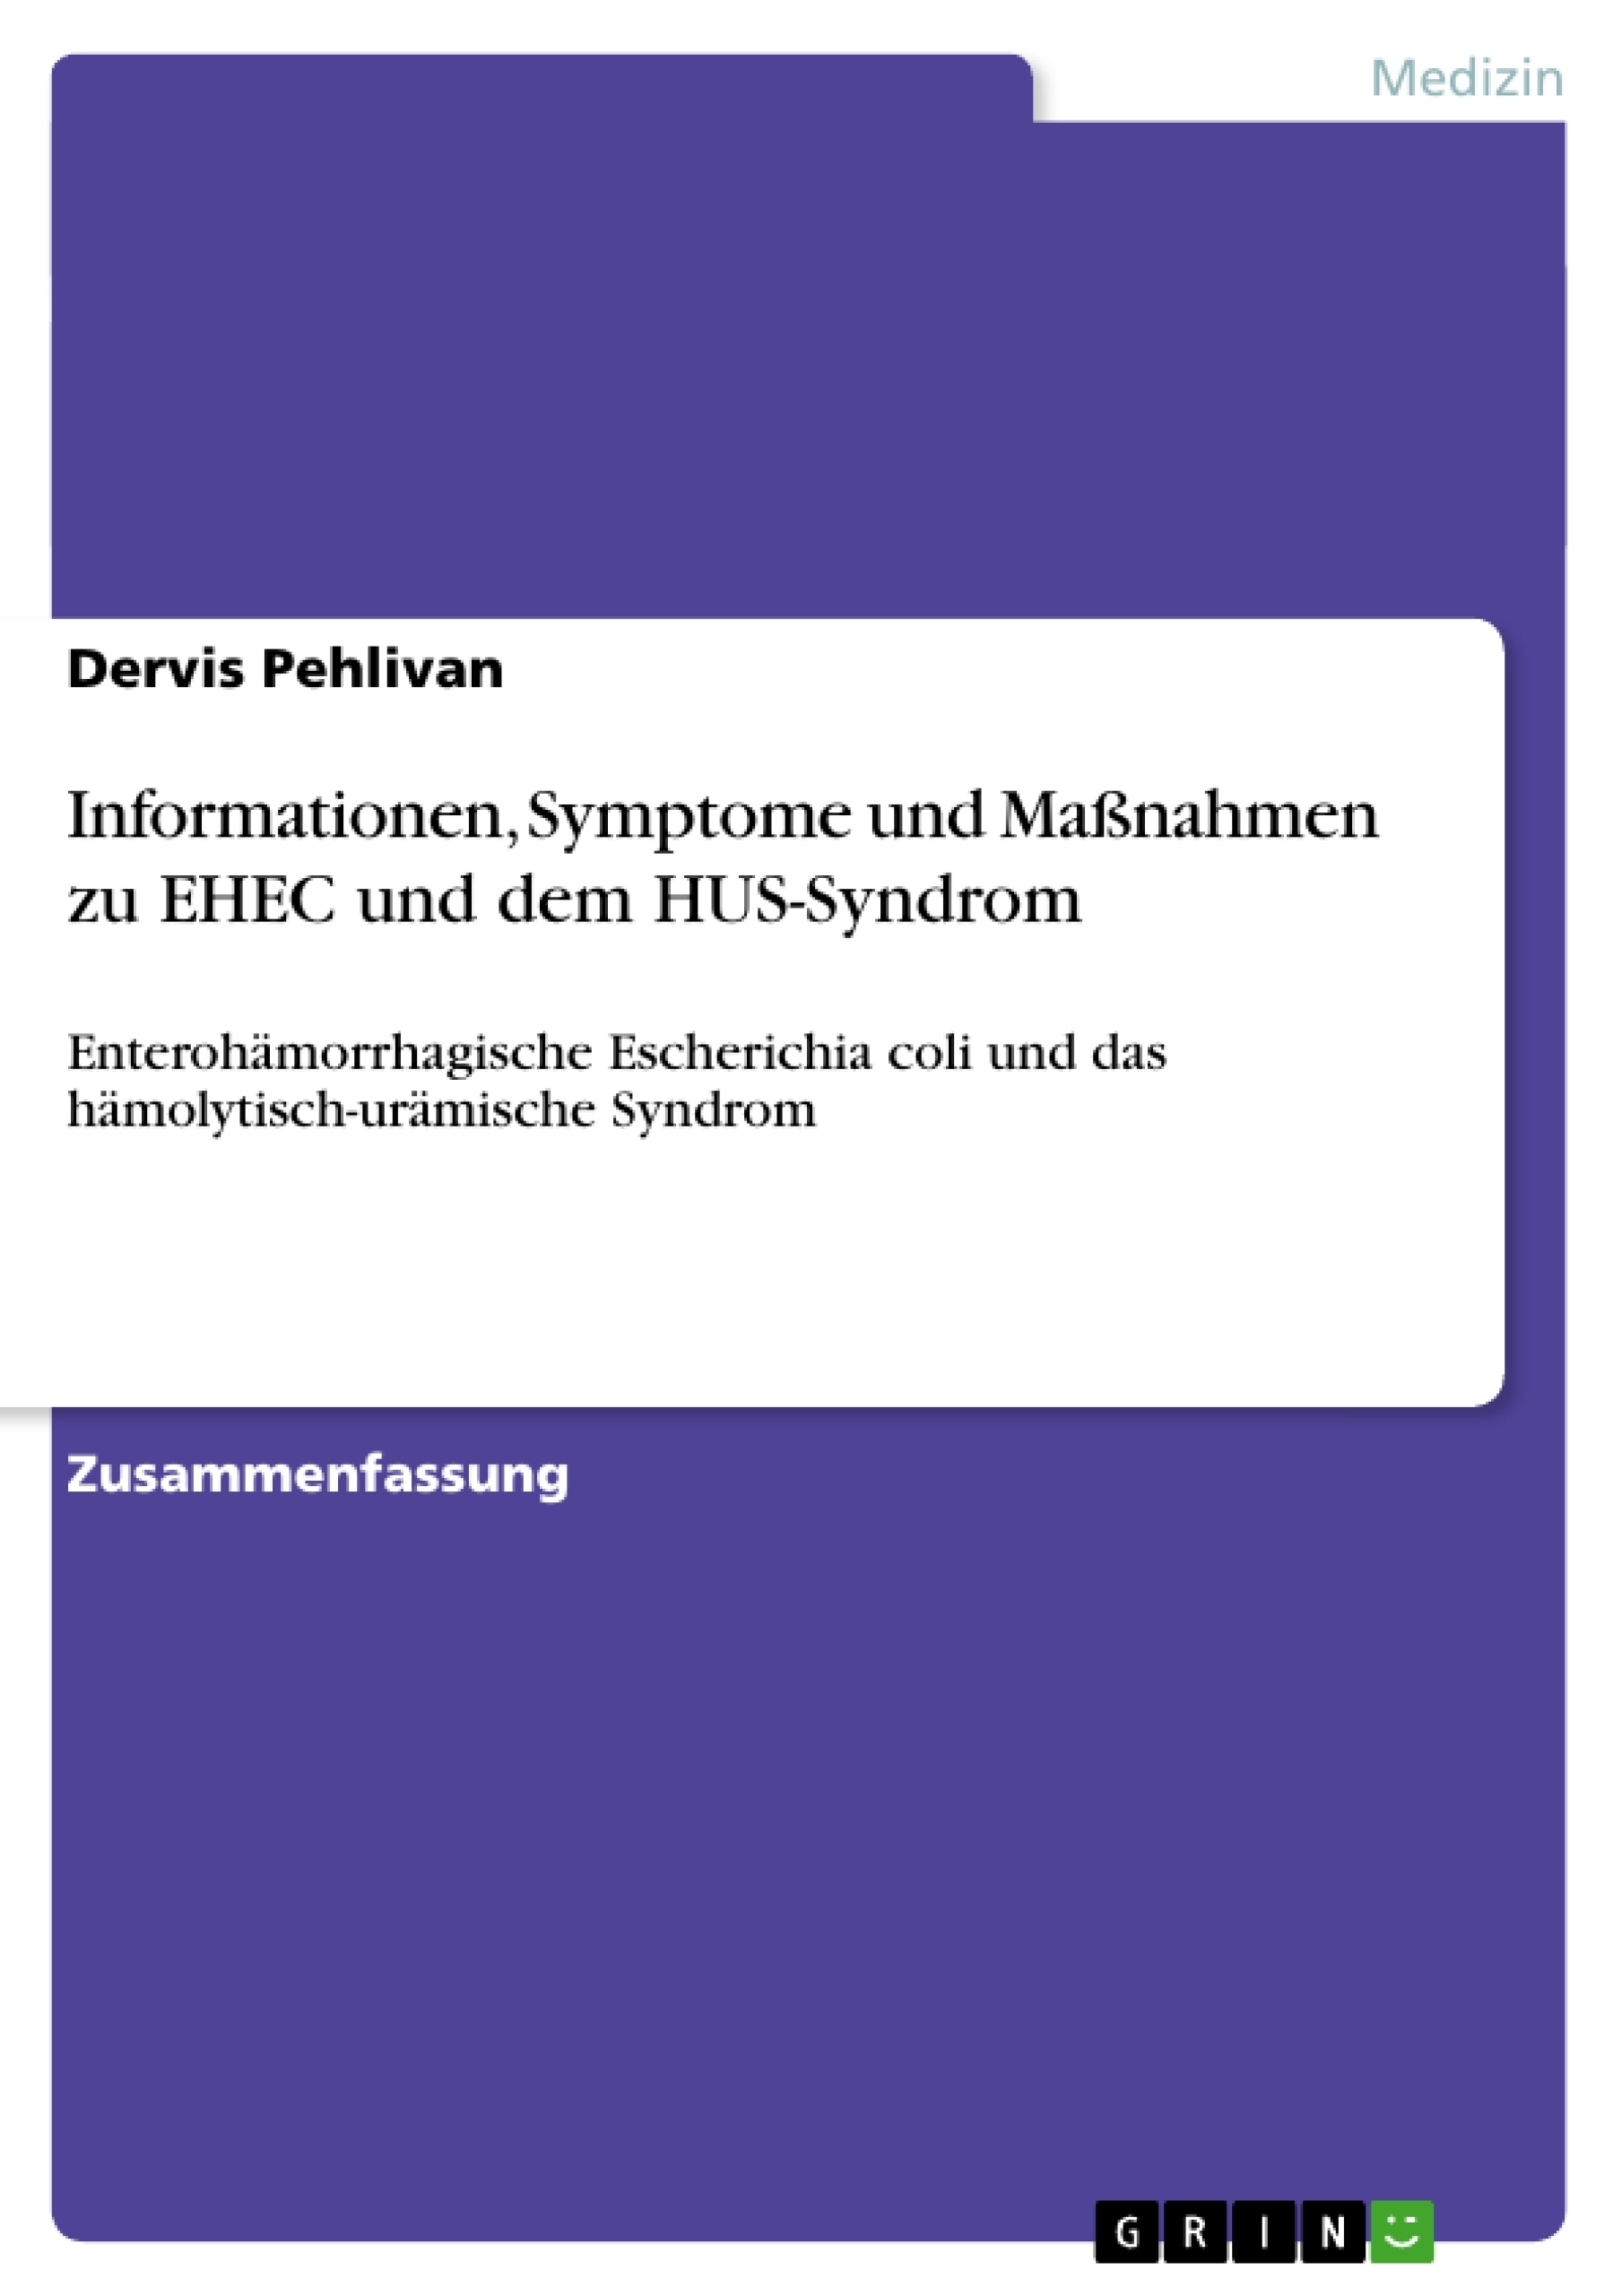 Title: Informationen, Symptome und Maßnahmen zu EHEC und dem HUS-Syndrom